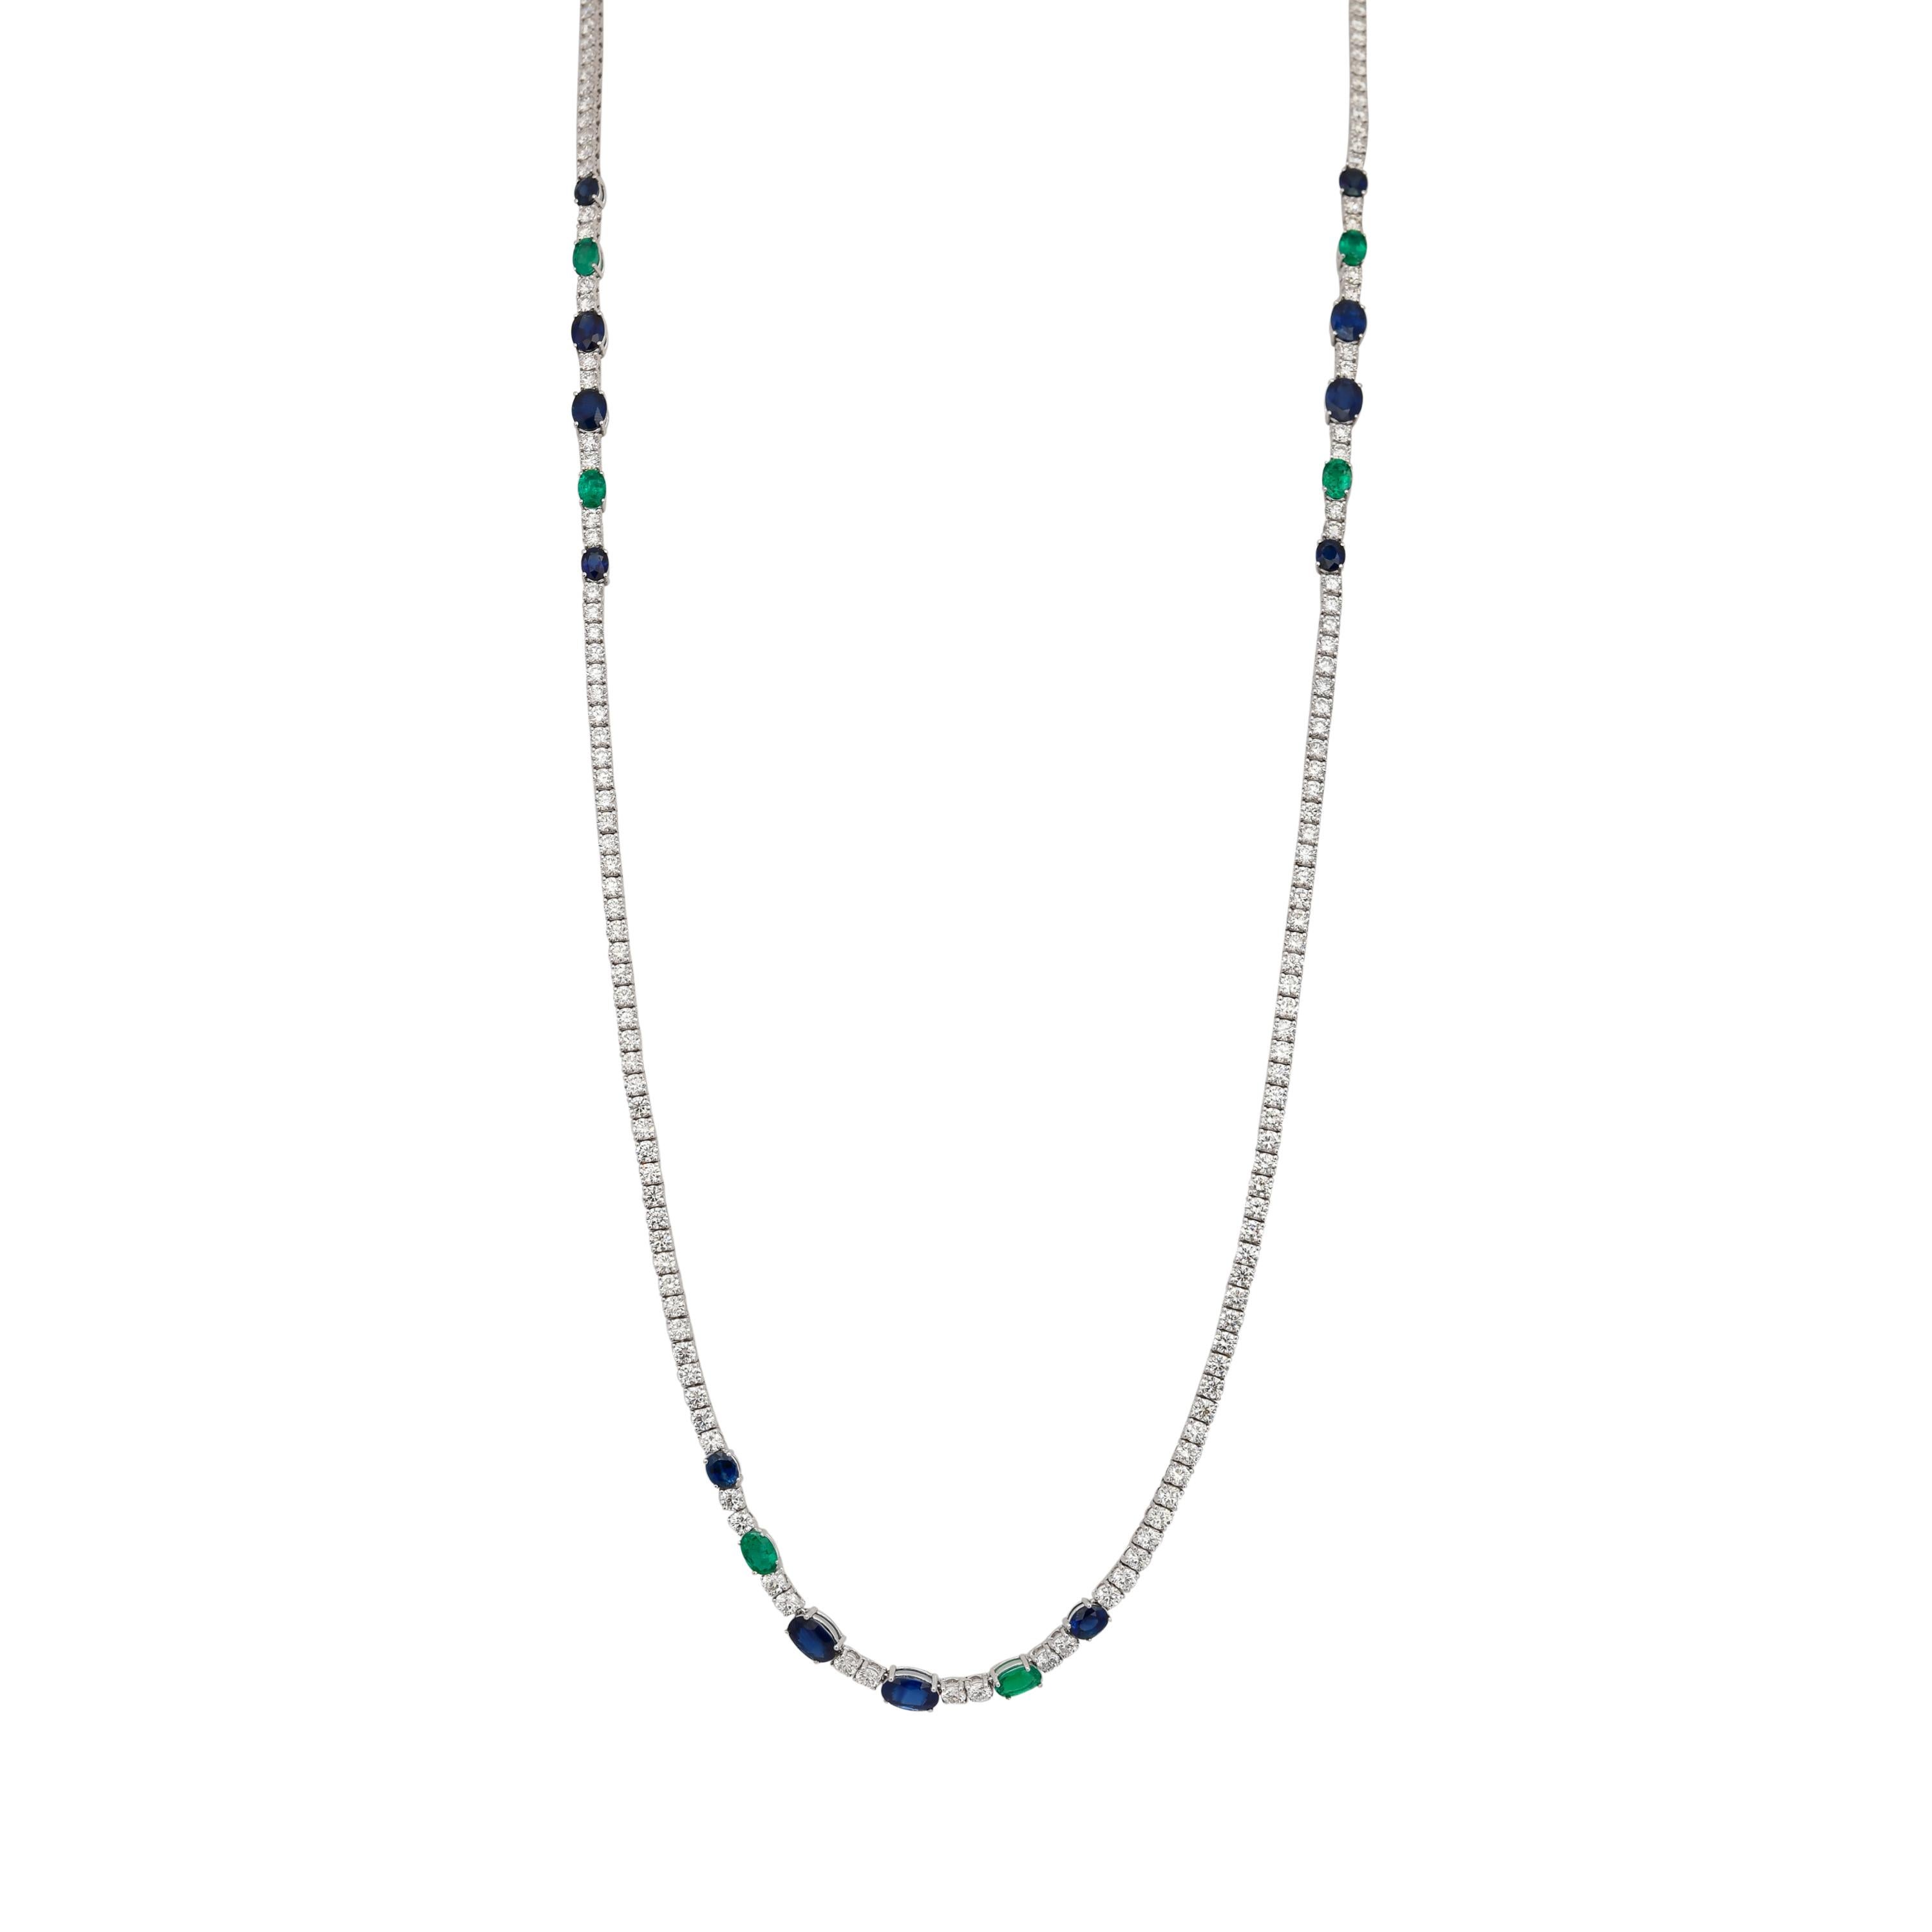 Un long collier classique en diamants avec une touche colorée, avec des accents de saphirs bleus et d'émeraudes. Une pièce intemporelle qui ne se démodera jamais et dont la valeur ne fera qu'augmenter avec le temps. Exclusivement par Sunita Nahata